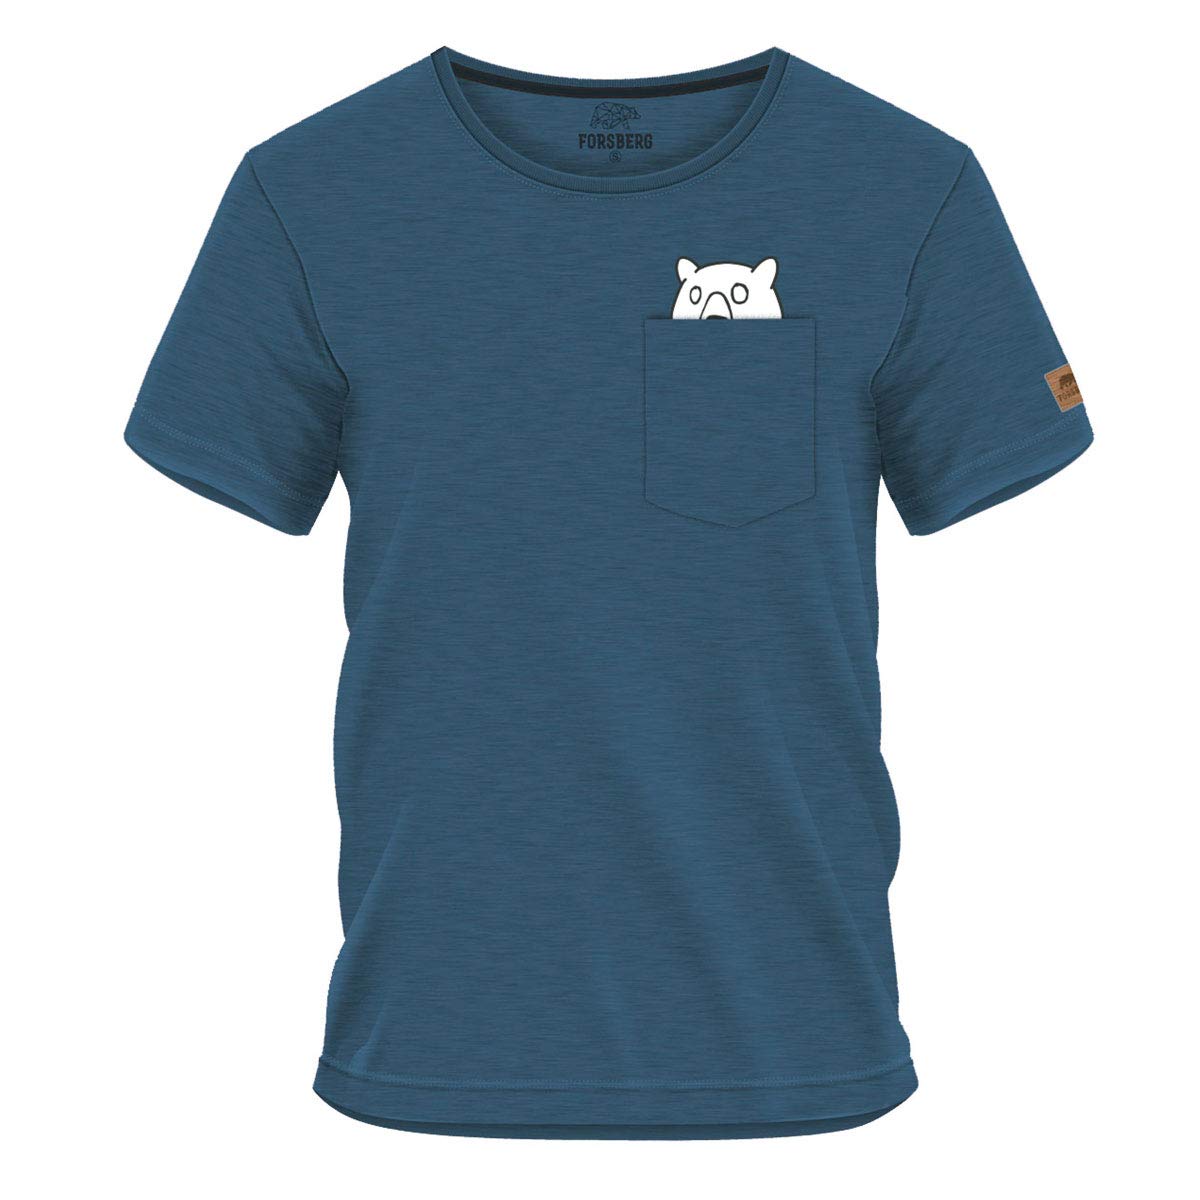 FORSBERG Ölbrorson T-Shirt Brusttasche mit prostendem Bier Bär Funshirt Rundhals bequem robust, Farbe:blau, Größe:XXL